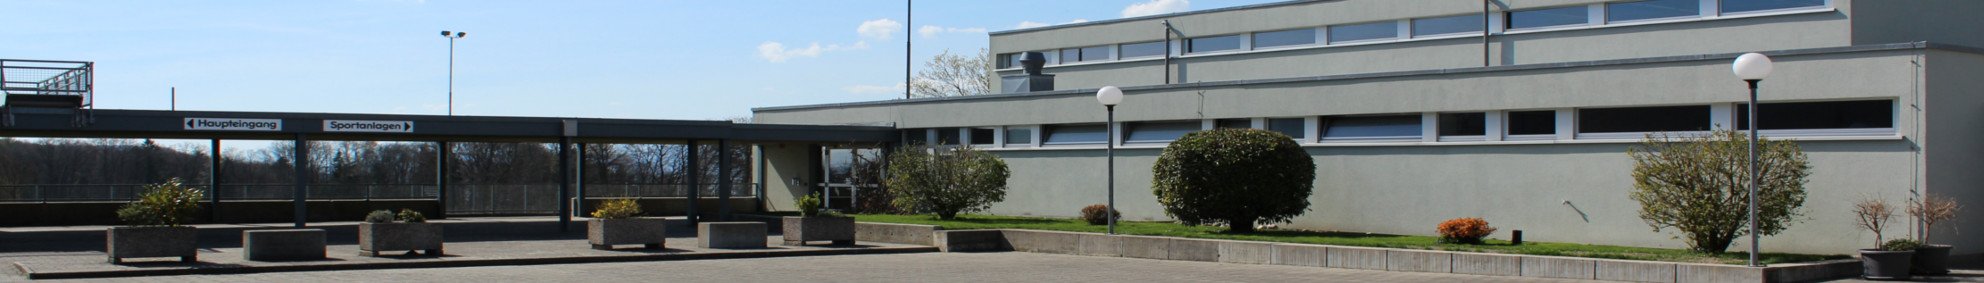 Oberstufenzentrum Täuffelen OSZT